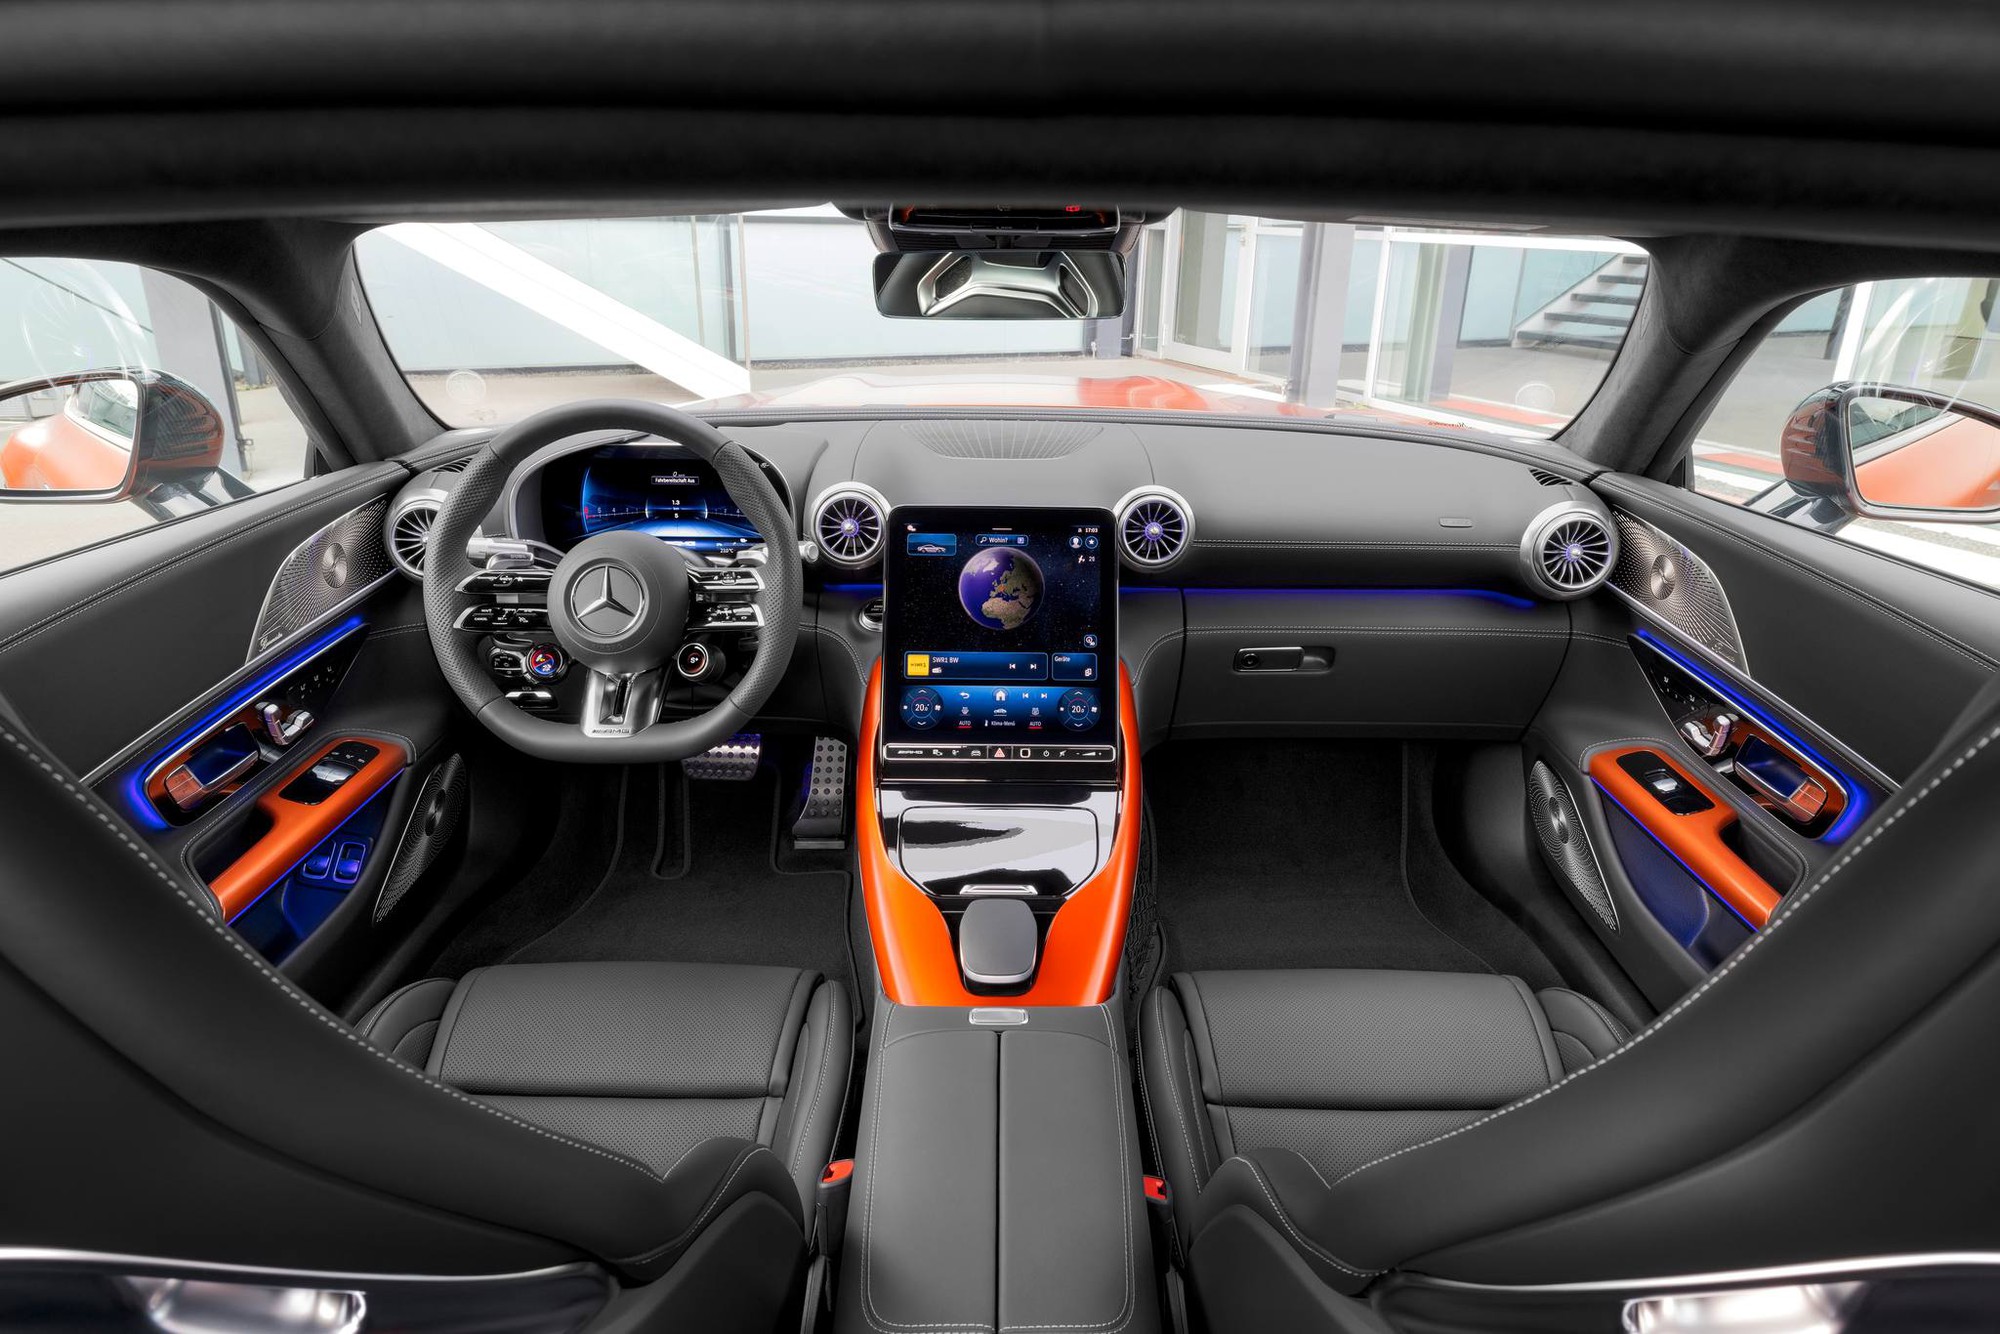 Mercedes-AMG GT 63 S E Performance mở cọc tại đại lý: Mạnh tới hơn 800 mã lực, dự kiến từ 11 tỷ đồng, sau 6 tháng mới được nhận xe- Ảnh 2.